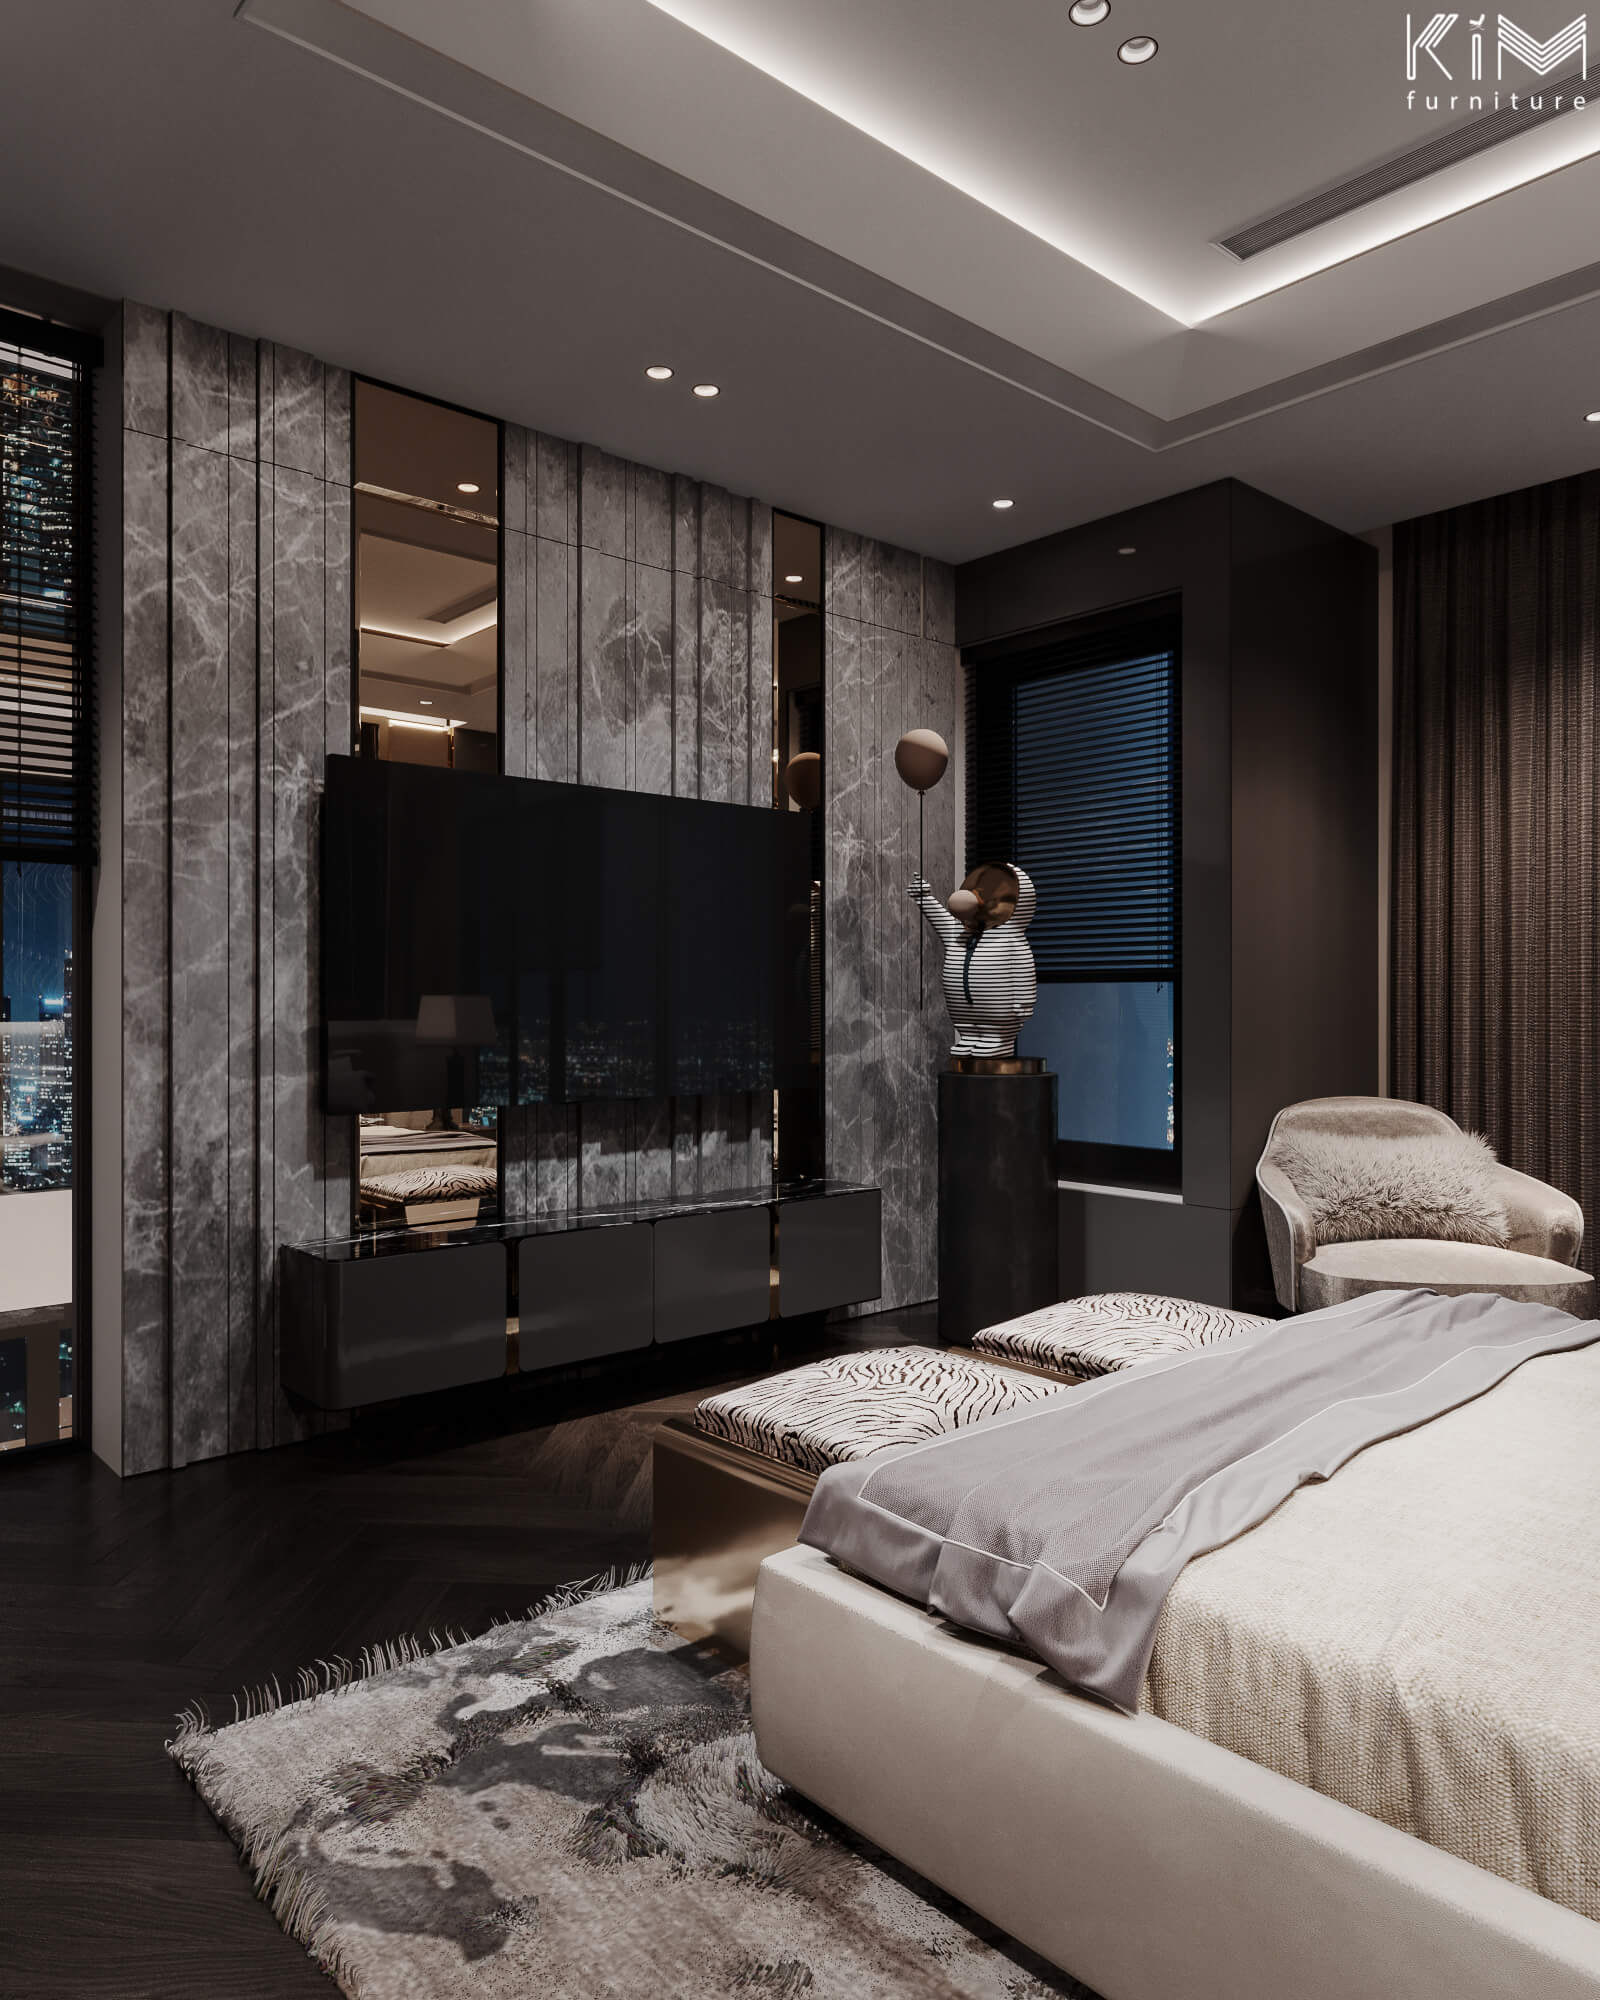 Thiết kế kệ gỗ đen sang trọng nẹp inox cho phòng ngủ